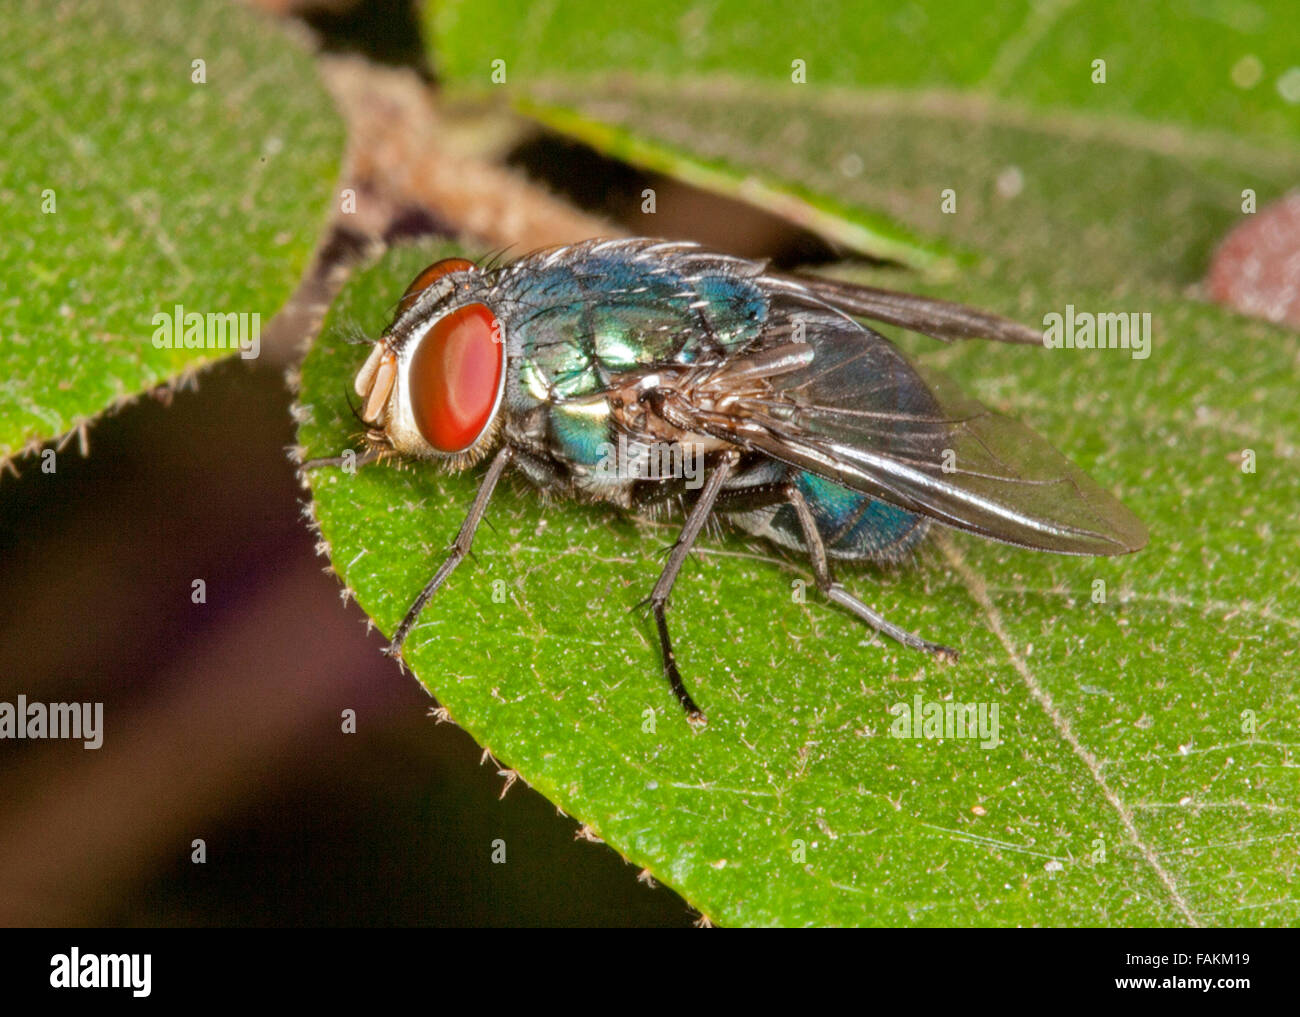 Close-up de mouche, Neomyia espèce avec d'immenses yeux marron, bleu / vert corps et les ailes sur feuille verte émeraude Banque D'Images